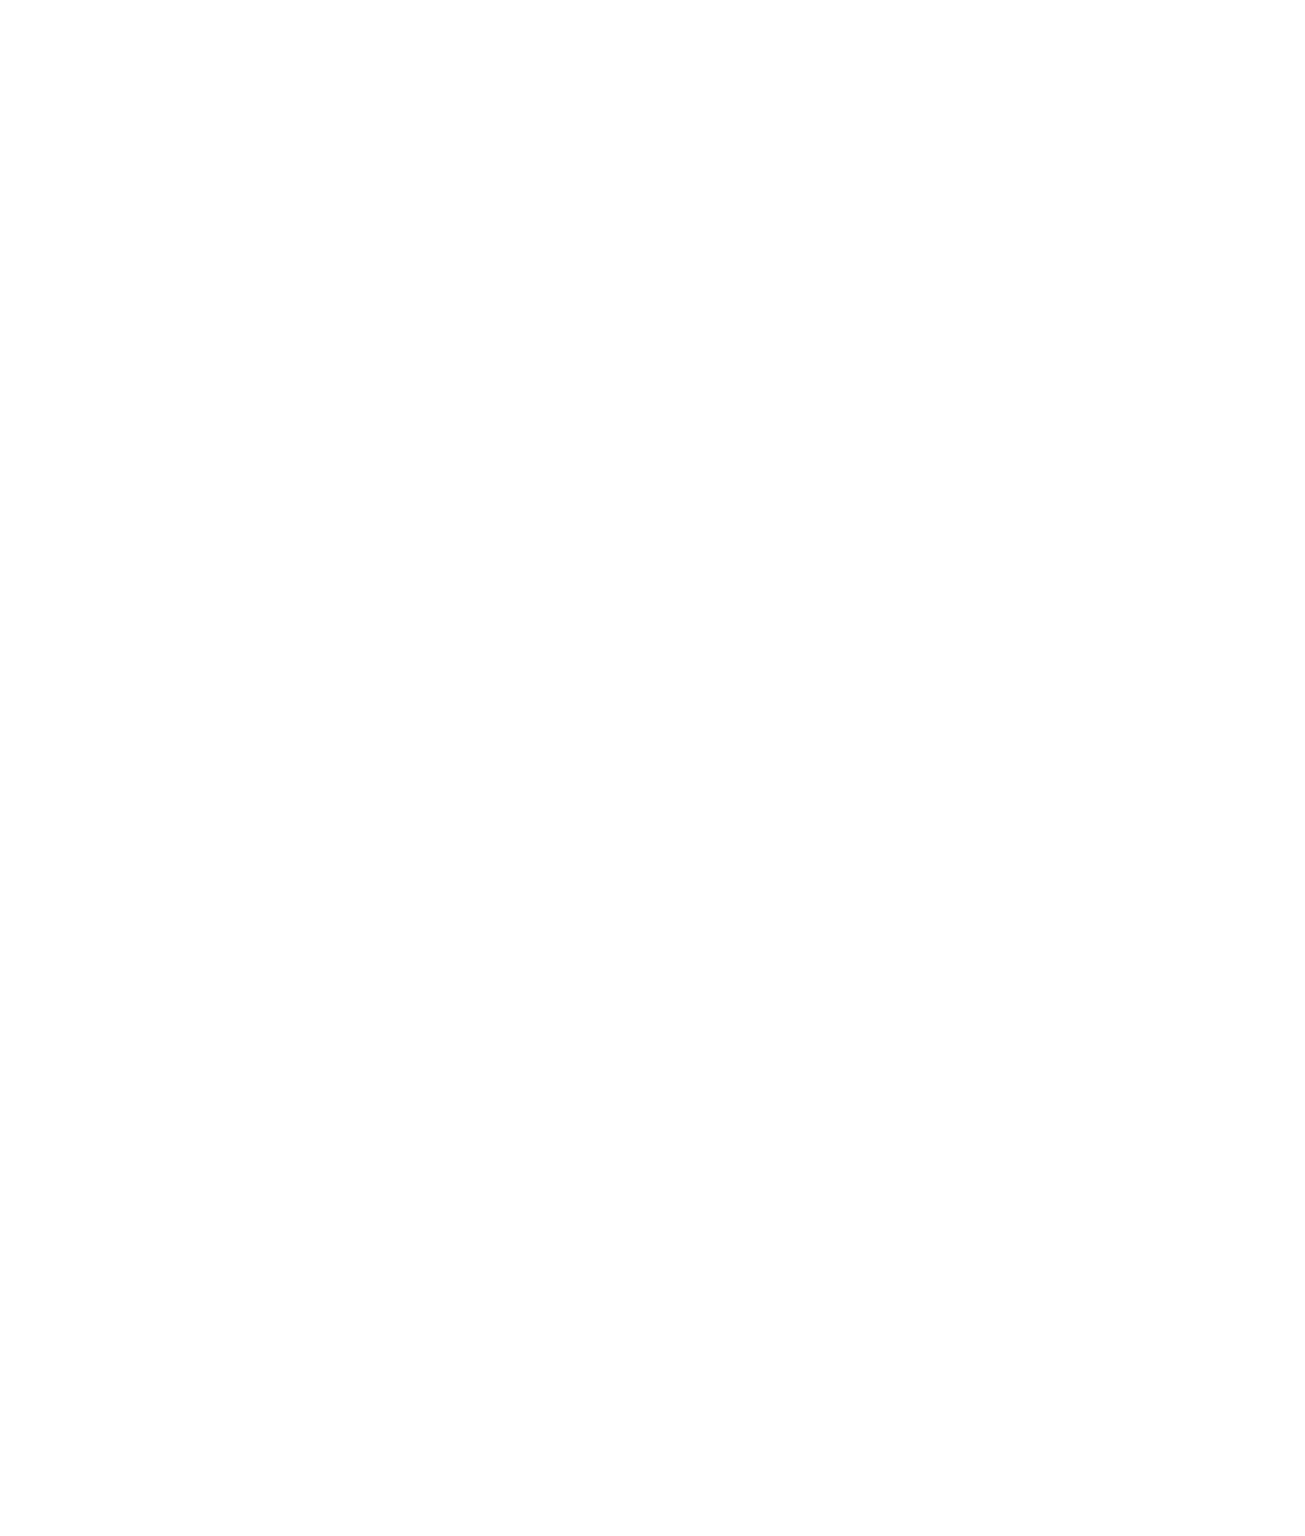 CACI logo for dark backgrounds (transparent PNG)